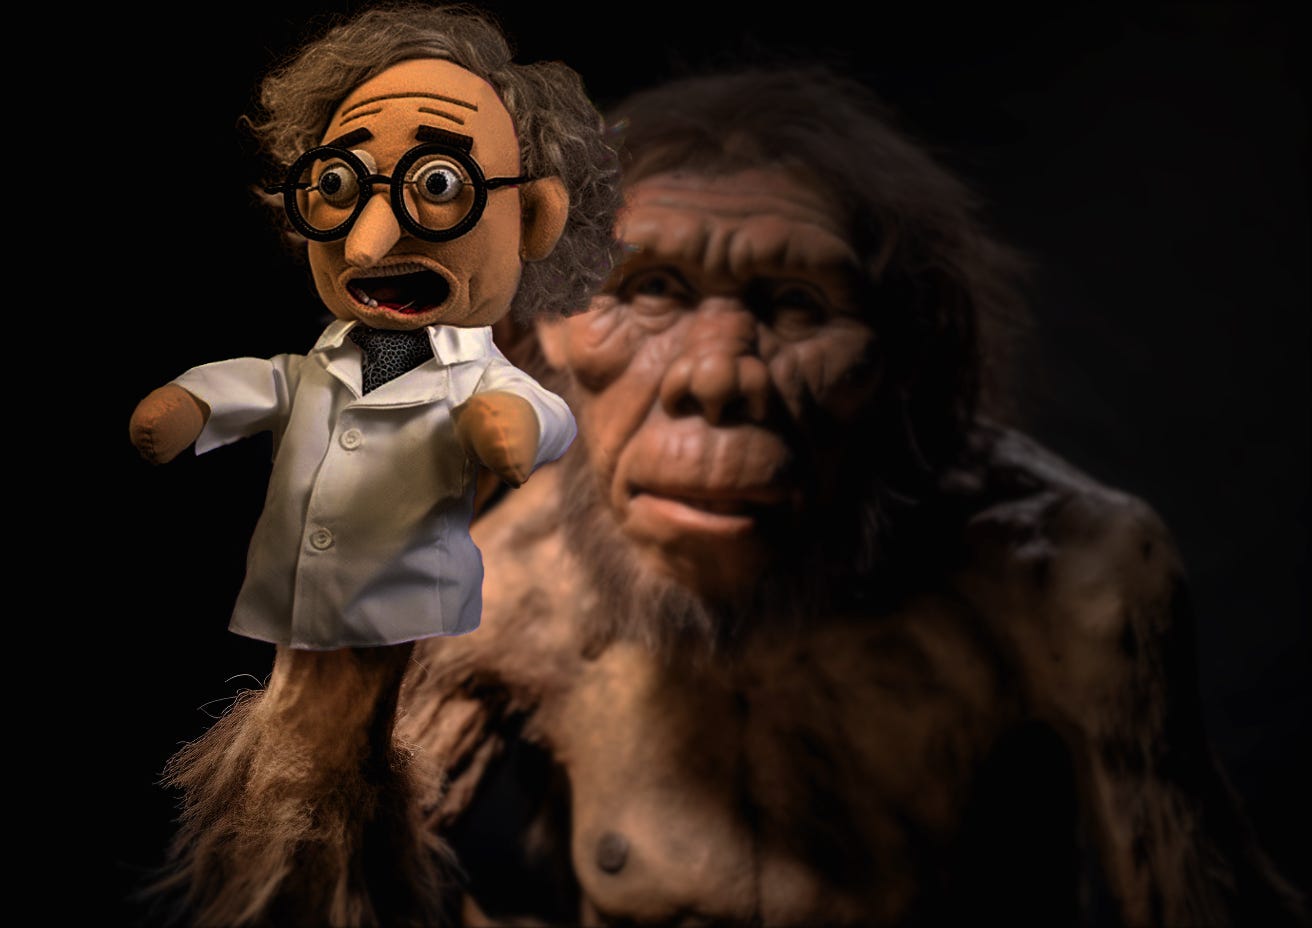 ancient human ancestor holding hand puppet of a modern human